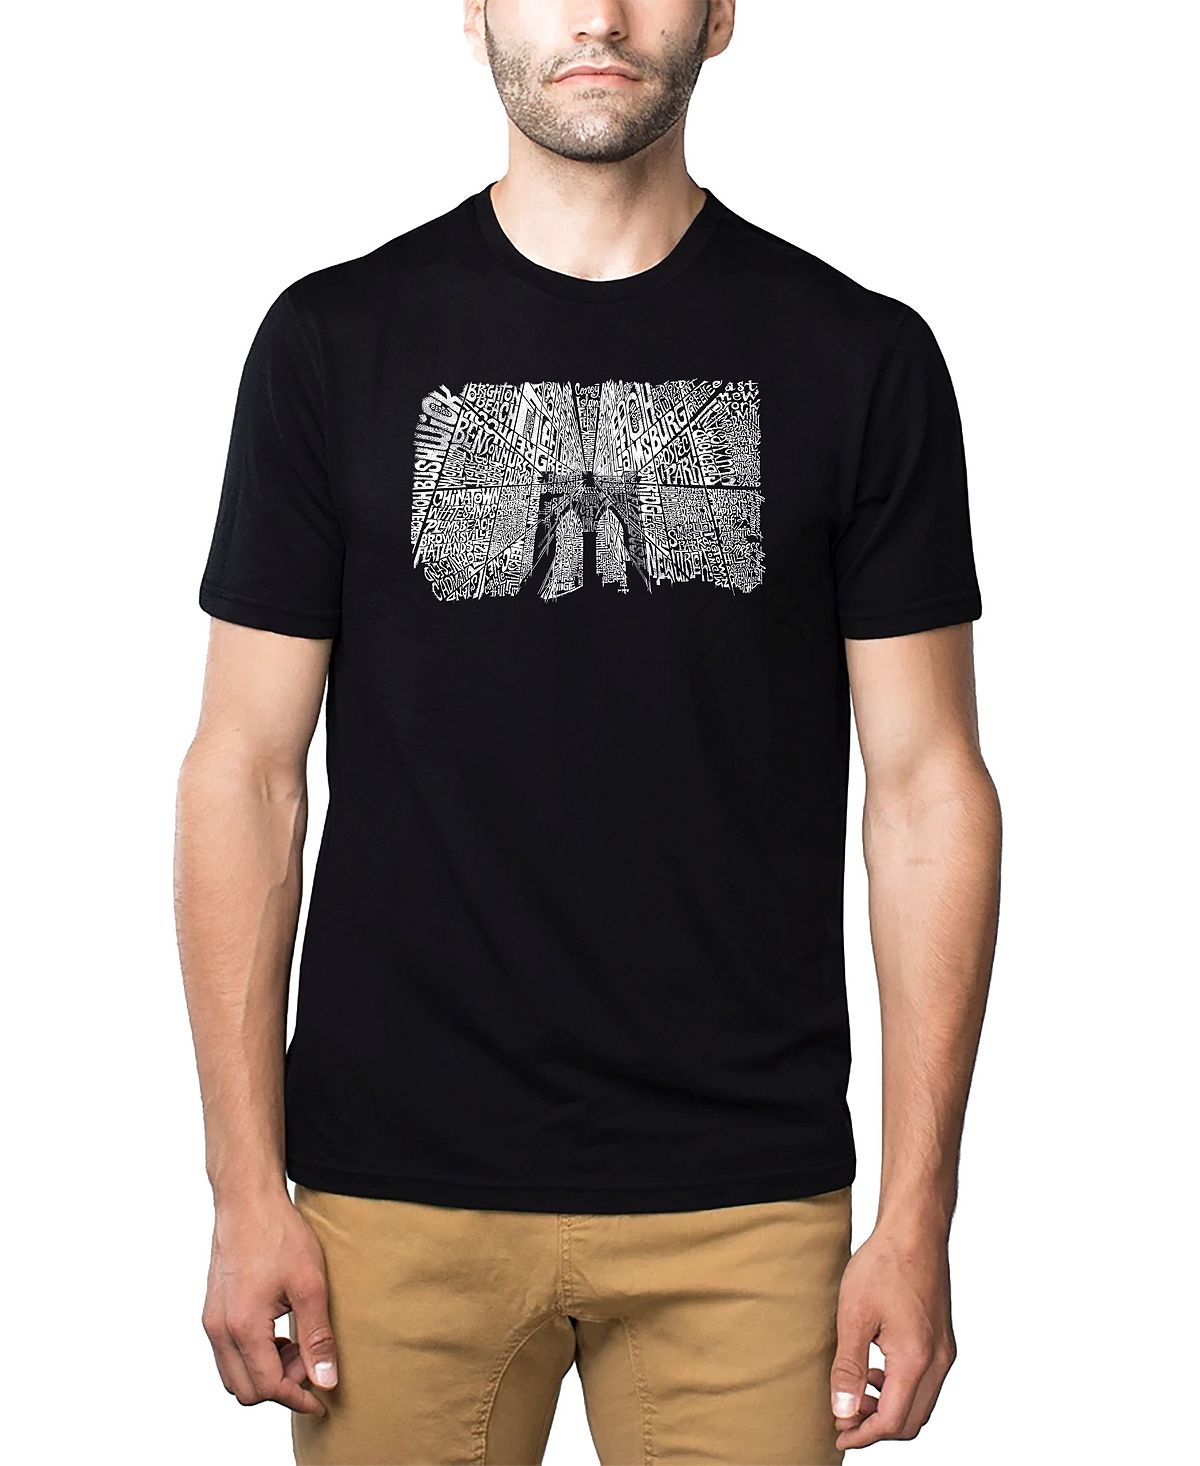 Мужская футболка premium blend word art - бруклинский мост LA Pop Art, черный